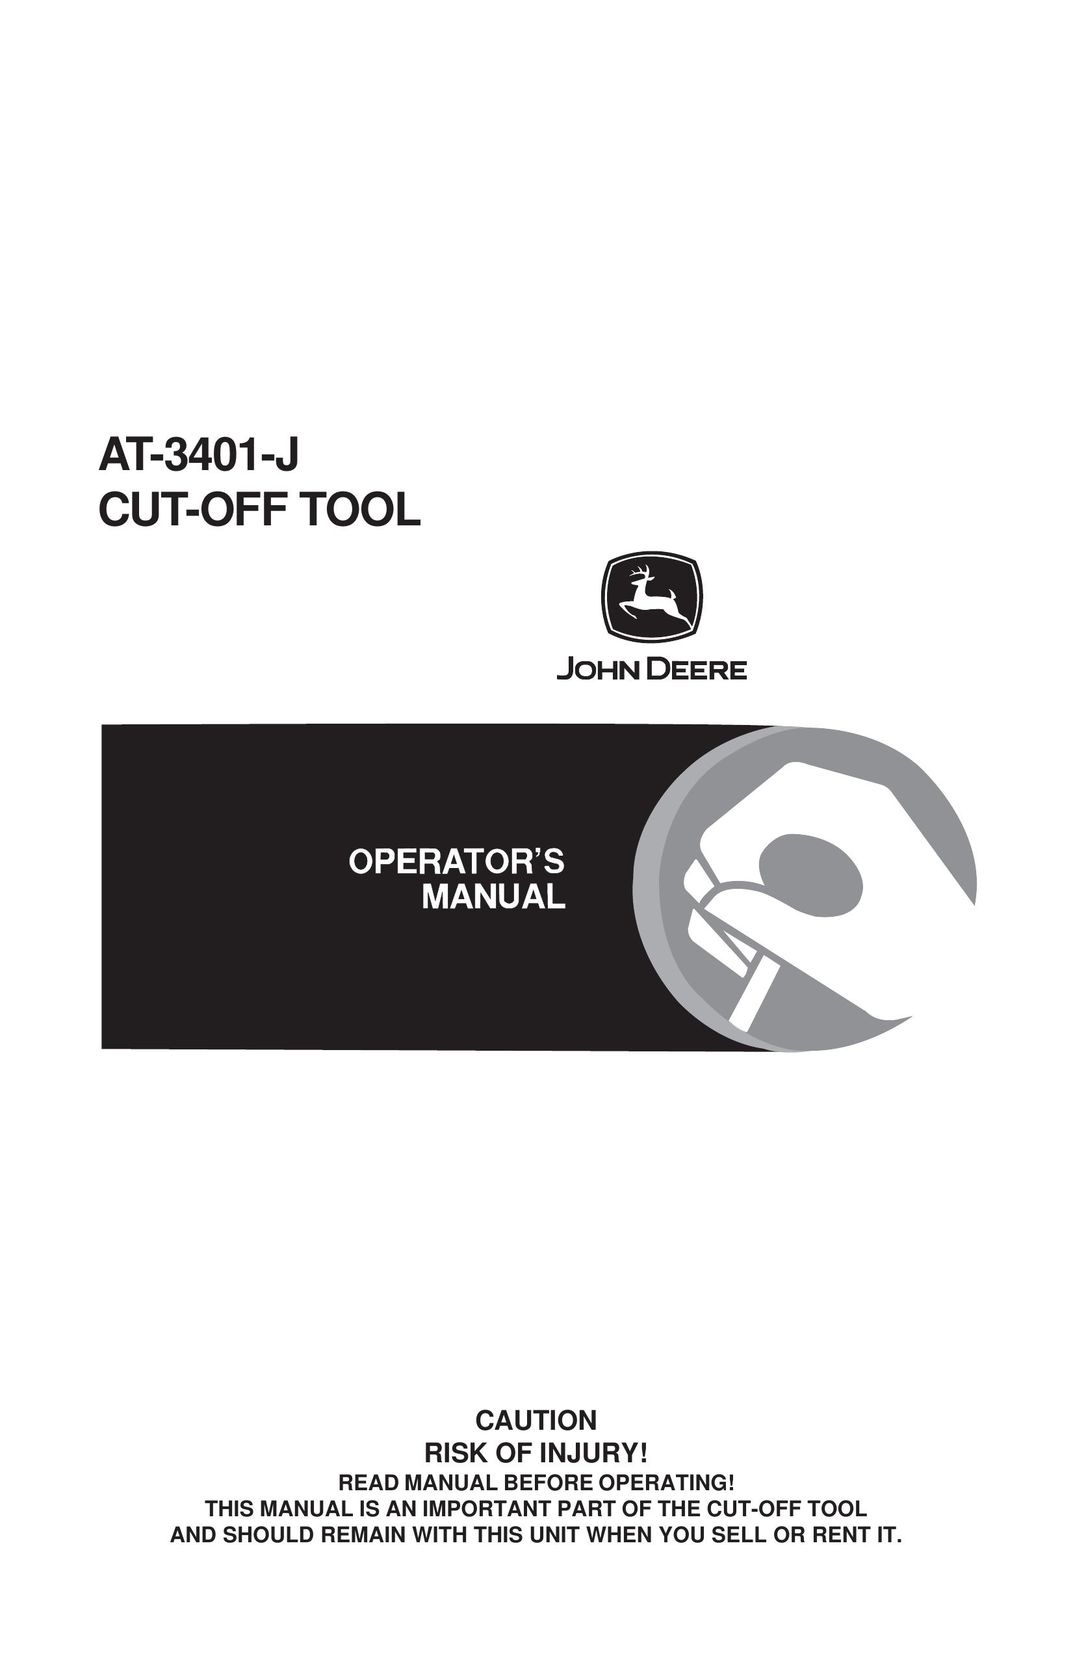 John Deere AT-3401-J Saw User Manual